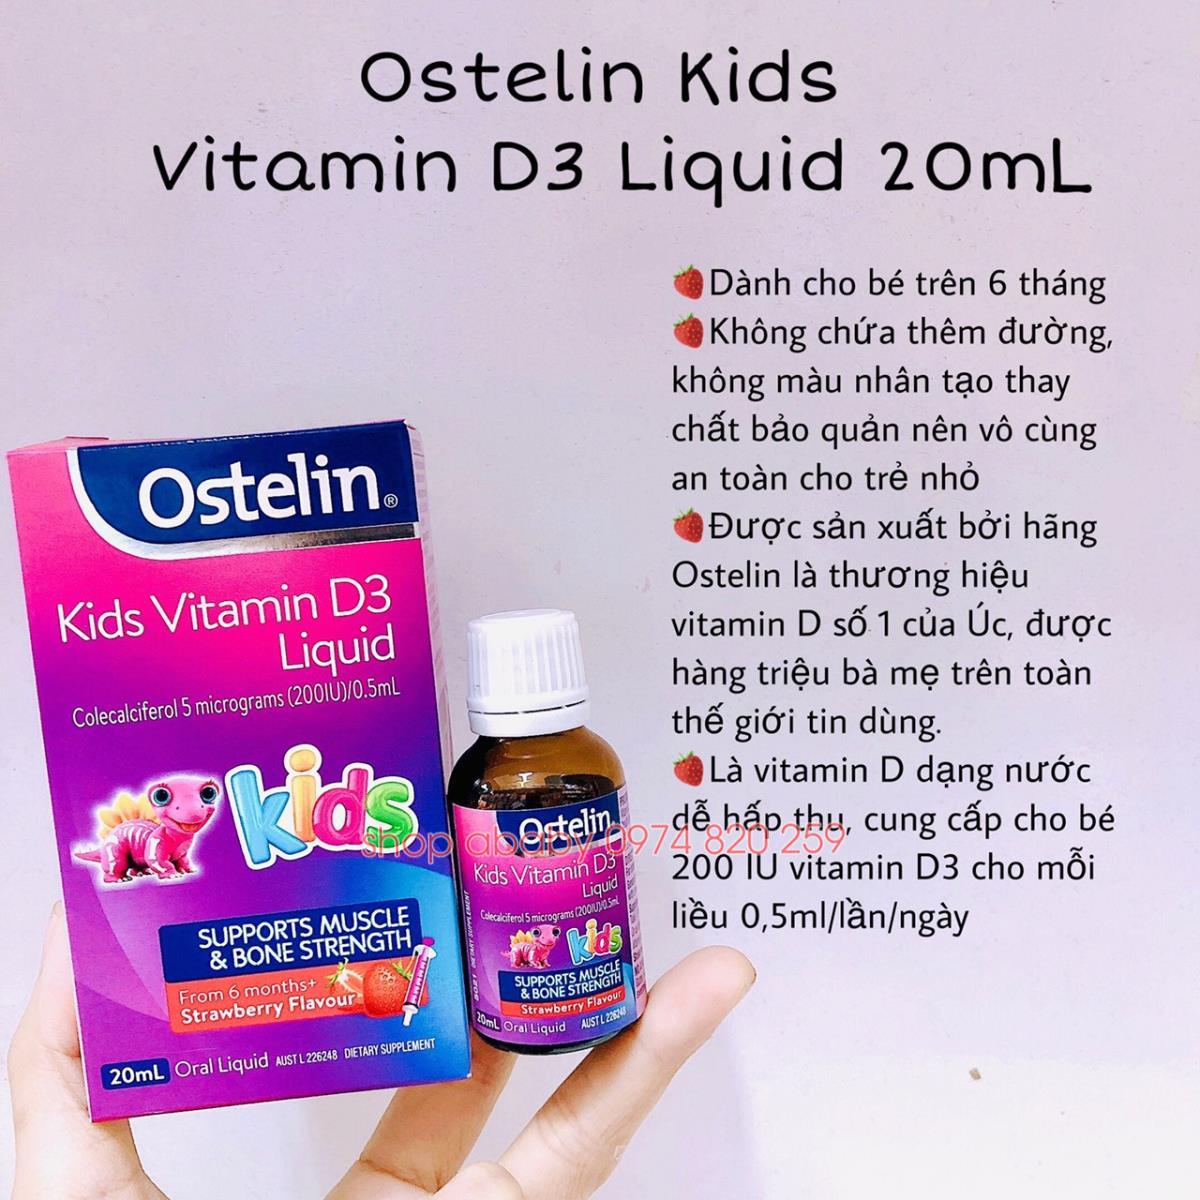 Có tác dụng phụ nào khi sử dụng Ostelin Vitamin D3 Liquid không?
